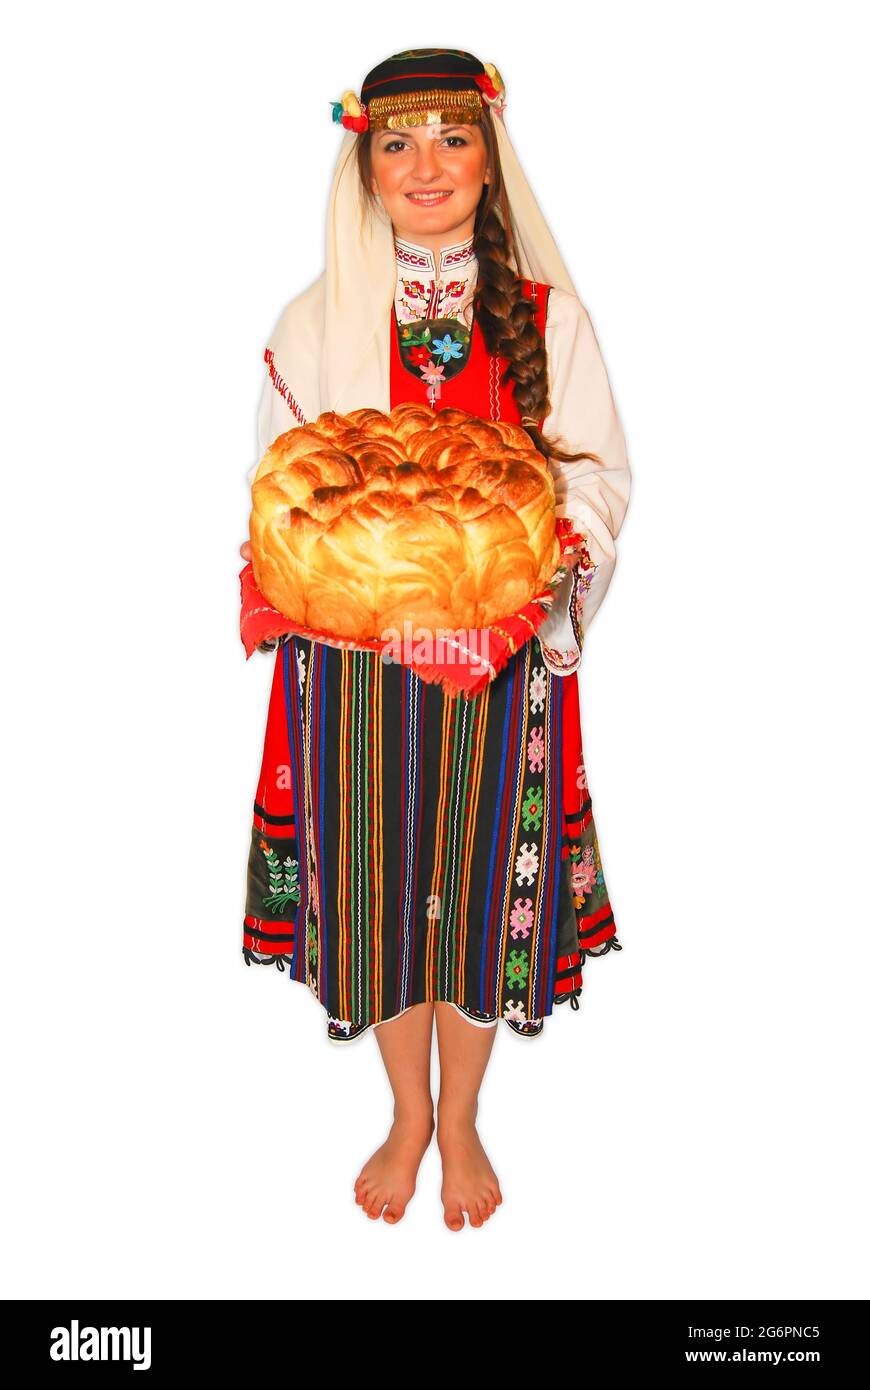 Junge Mädchen Bauer mit traditionellen bulgarischen Folklore-Kostüm und Sauerteig Brot in der Hand Porträt isoliert Stockfoto